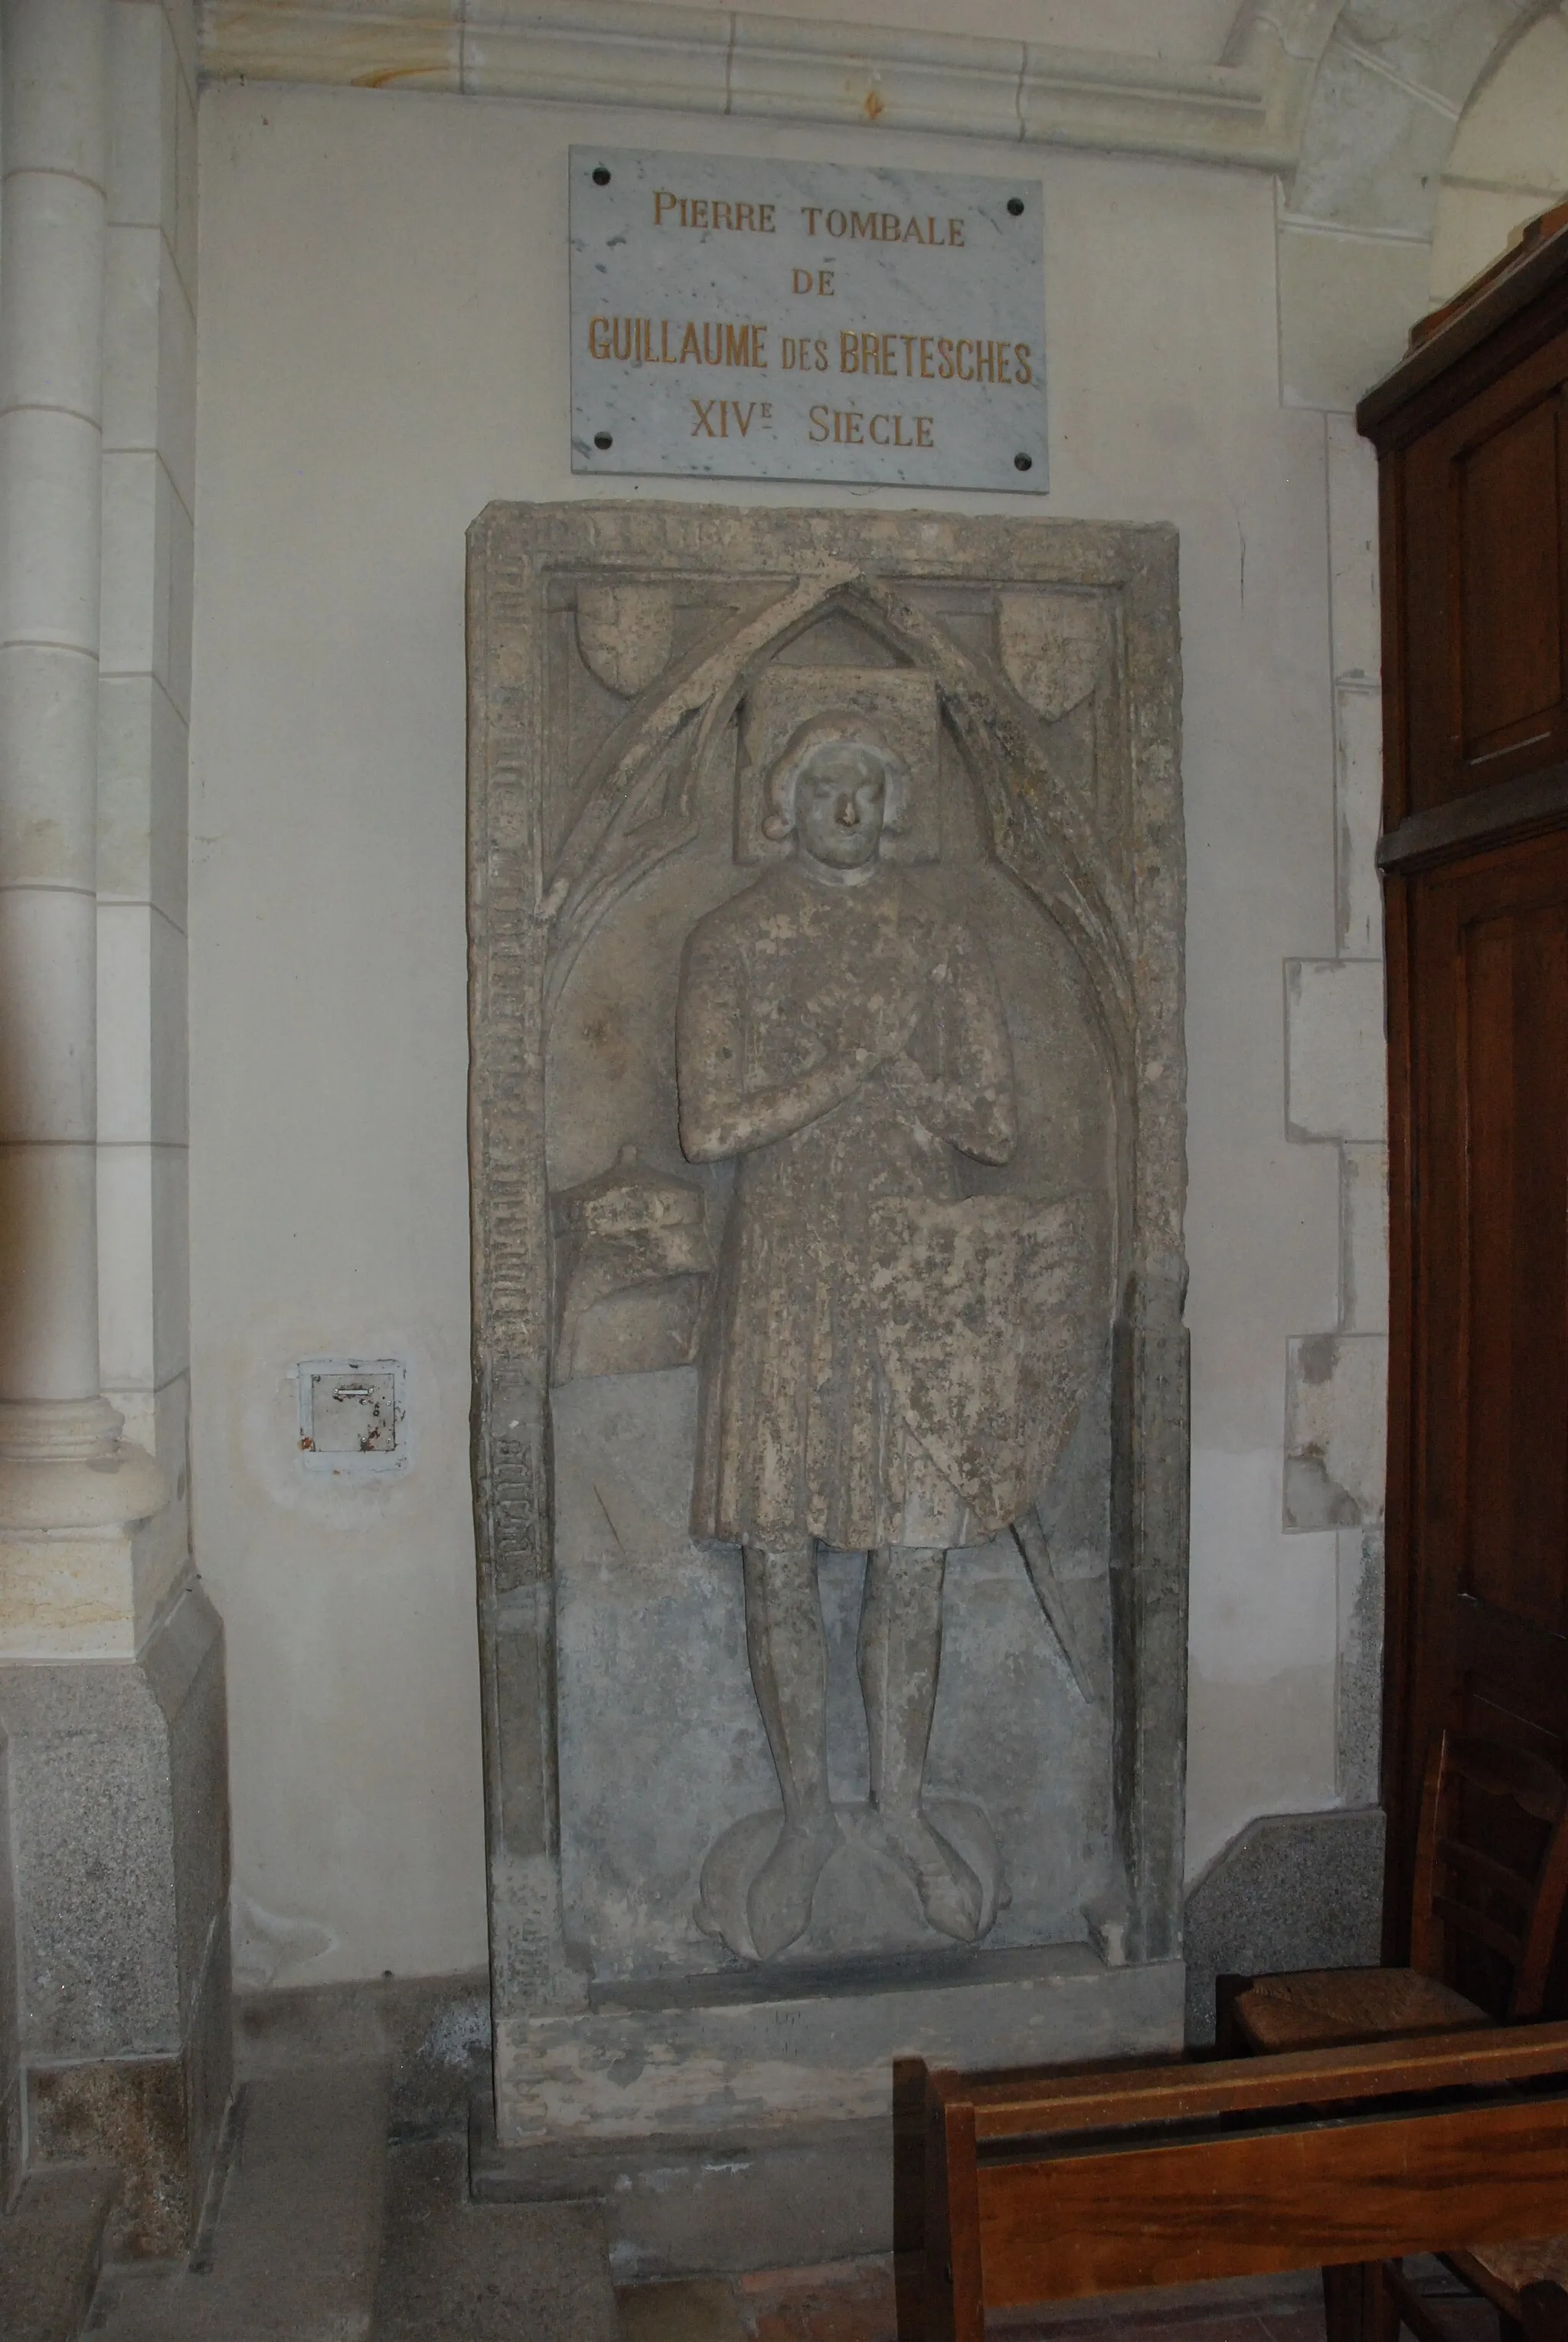 Photo showing: Plaque tombale de Guillaume des Bretesches